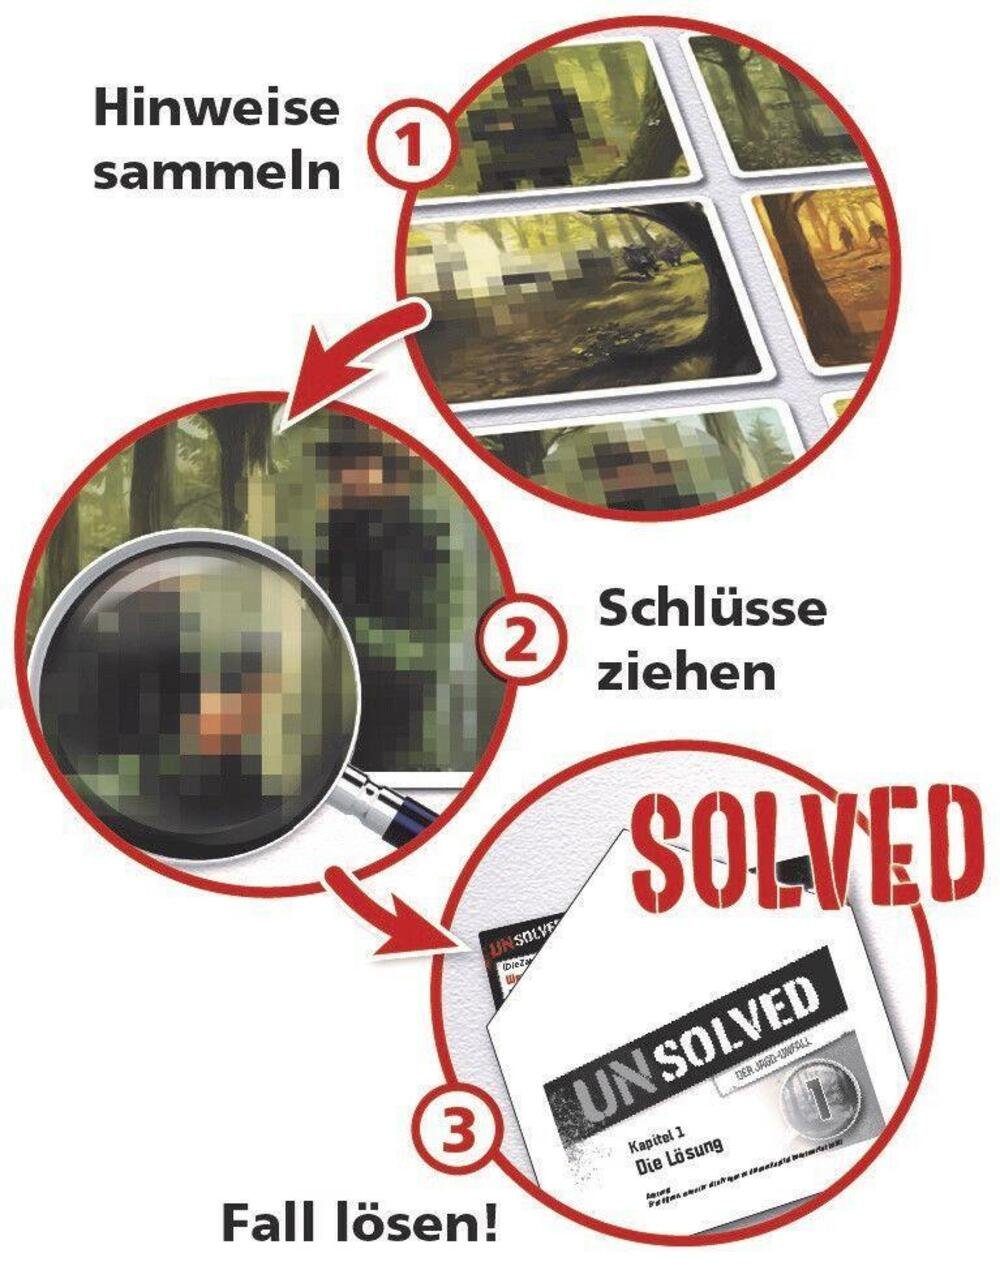 Unsolved - Jagd-Unfall AMIGO Der Spiel,